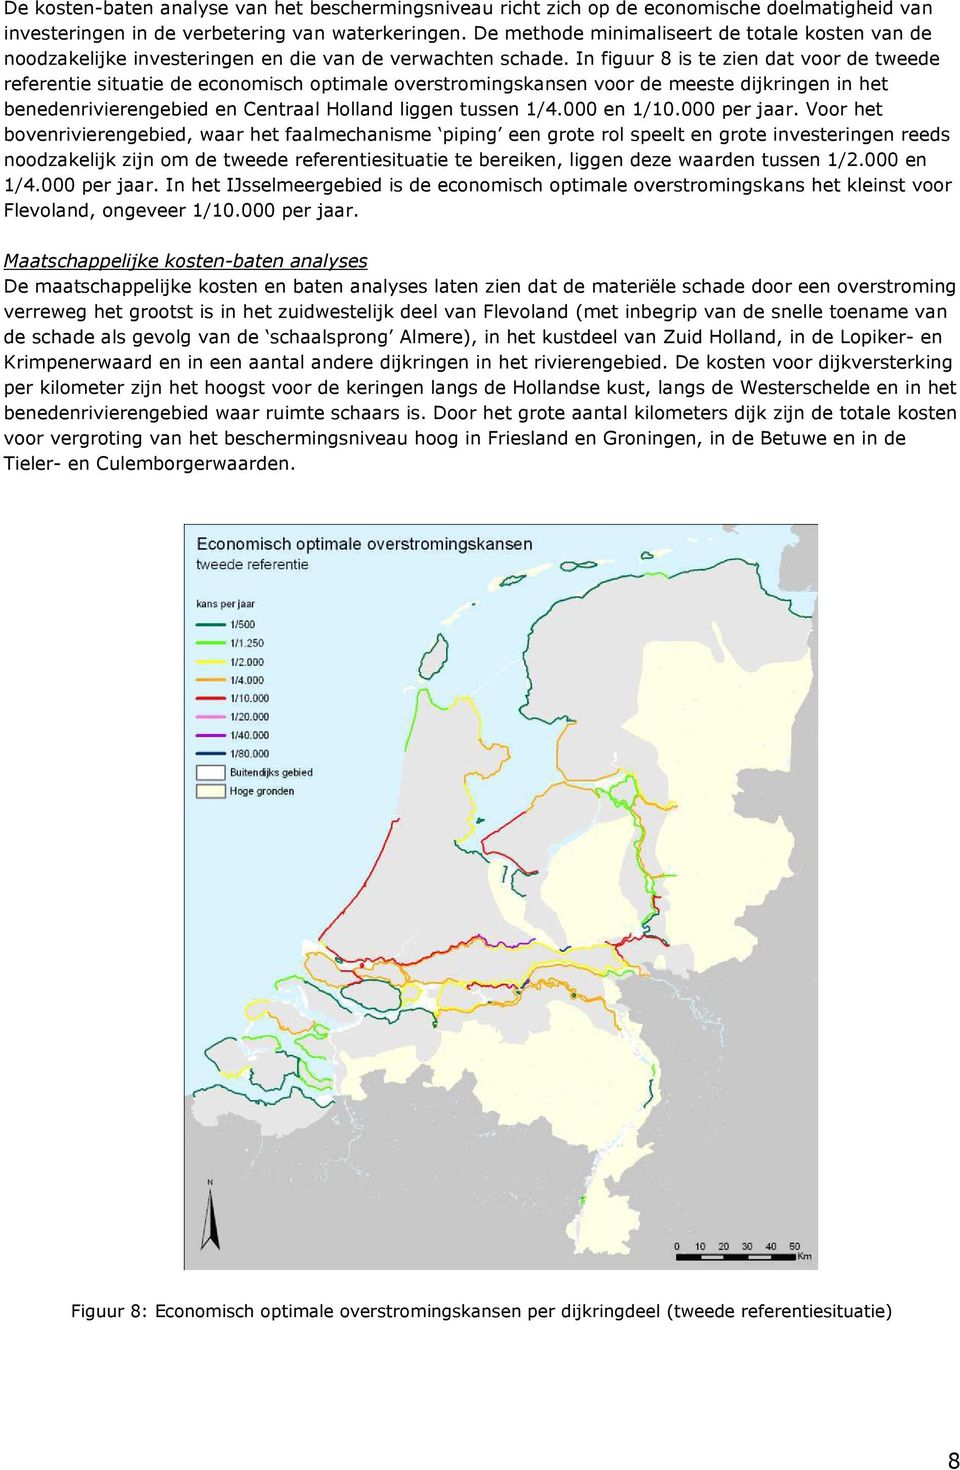 In figuur 8 is te zien dat voor de tweede referentie situatie de economisch optimale overstromingskansen voor de meeste dijkringen in het benedenrivierengebied en Centraal Holland liggen tussen 1/4.